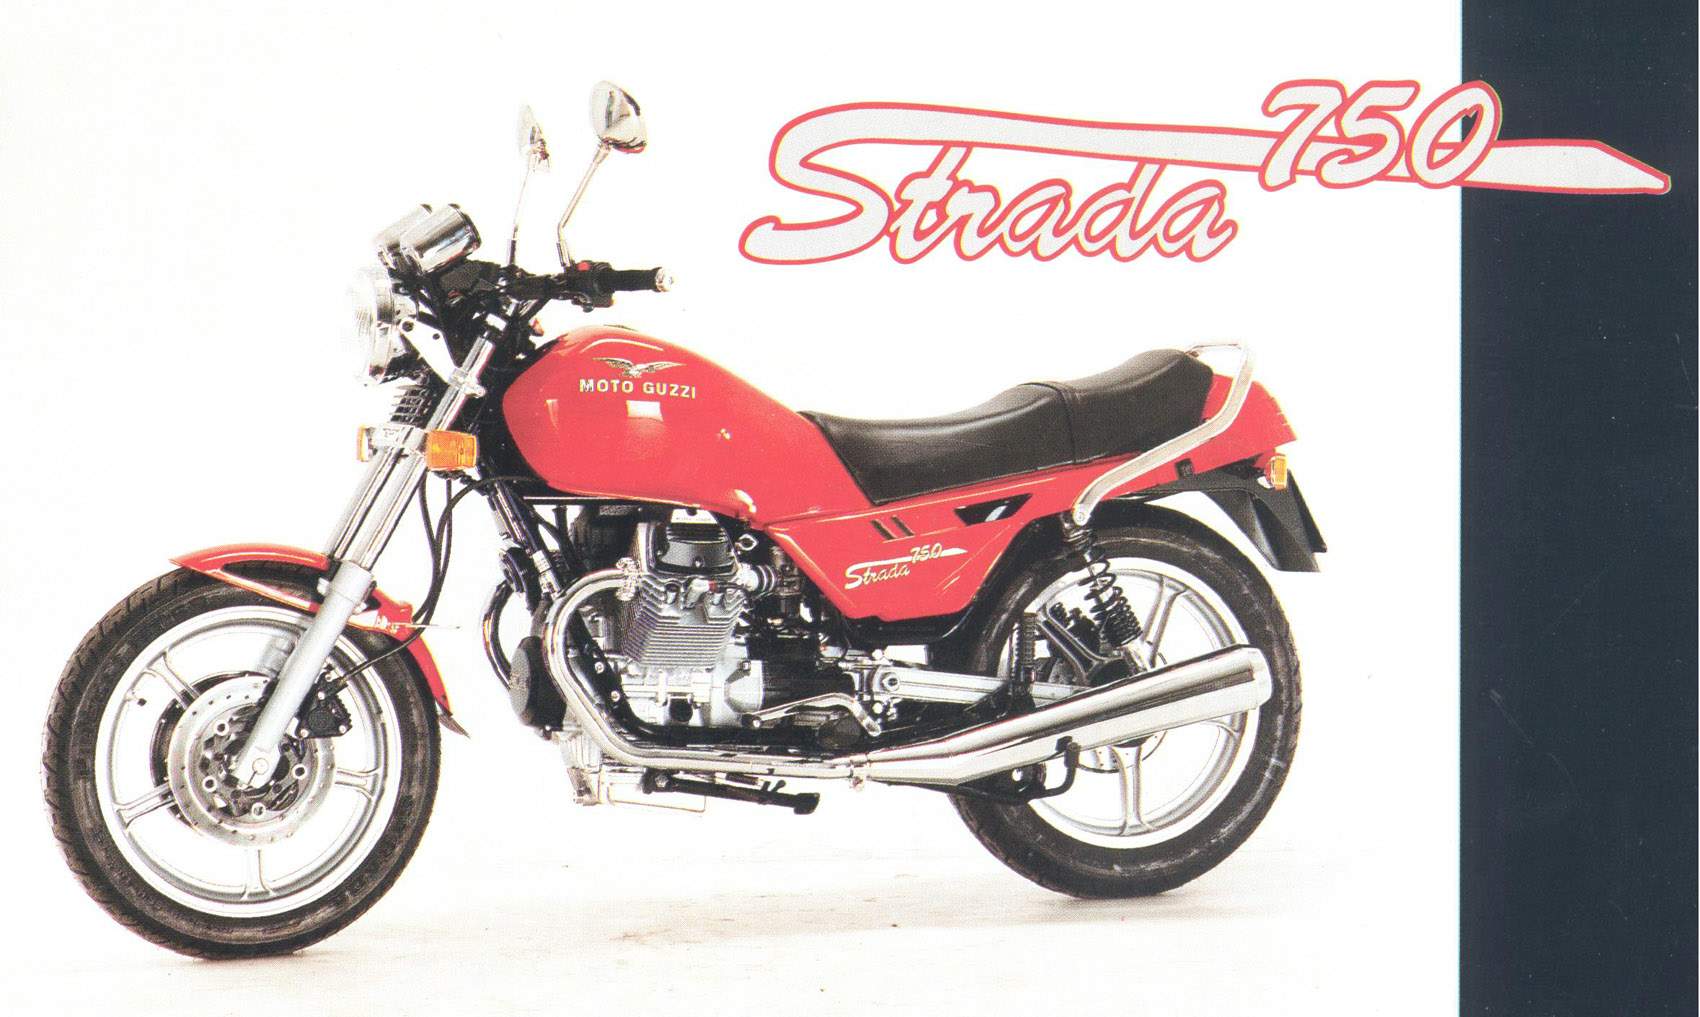 , Moto Guzzi 750 Strada